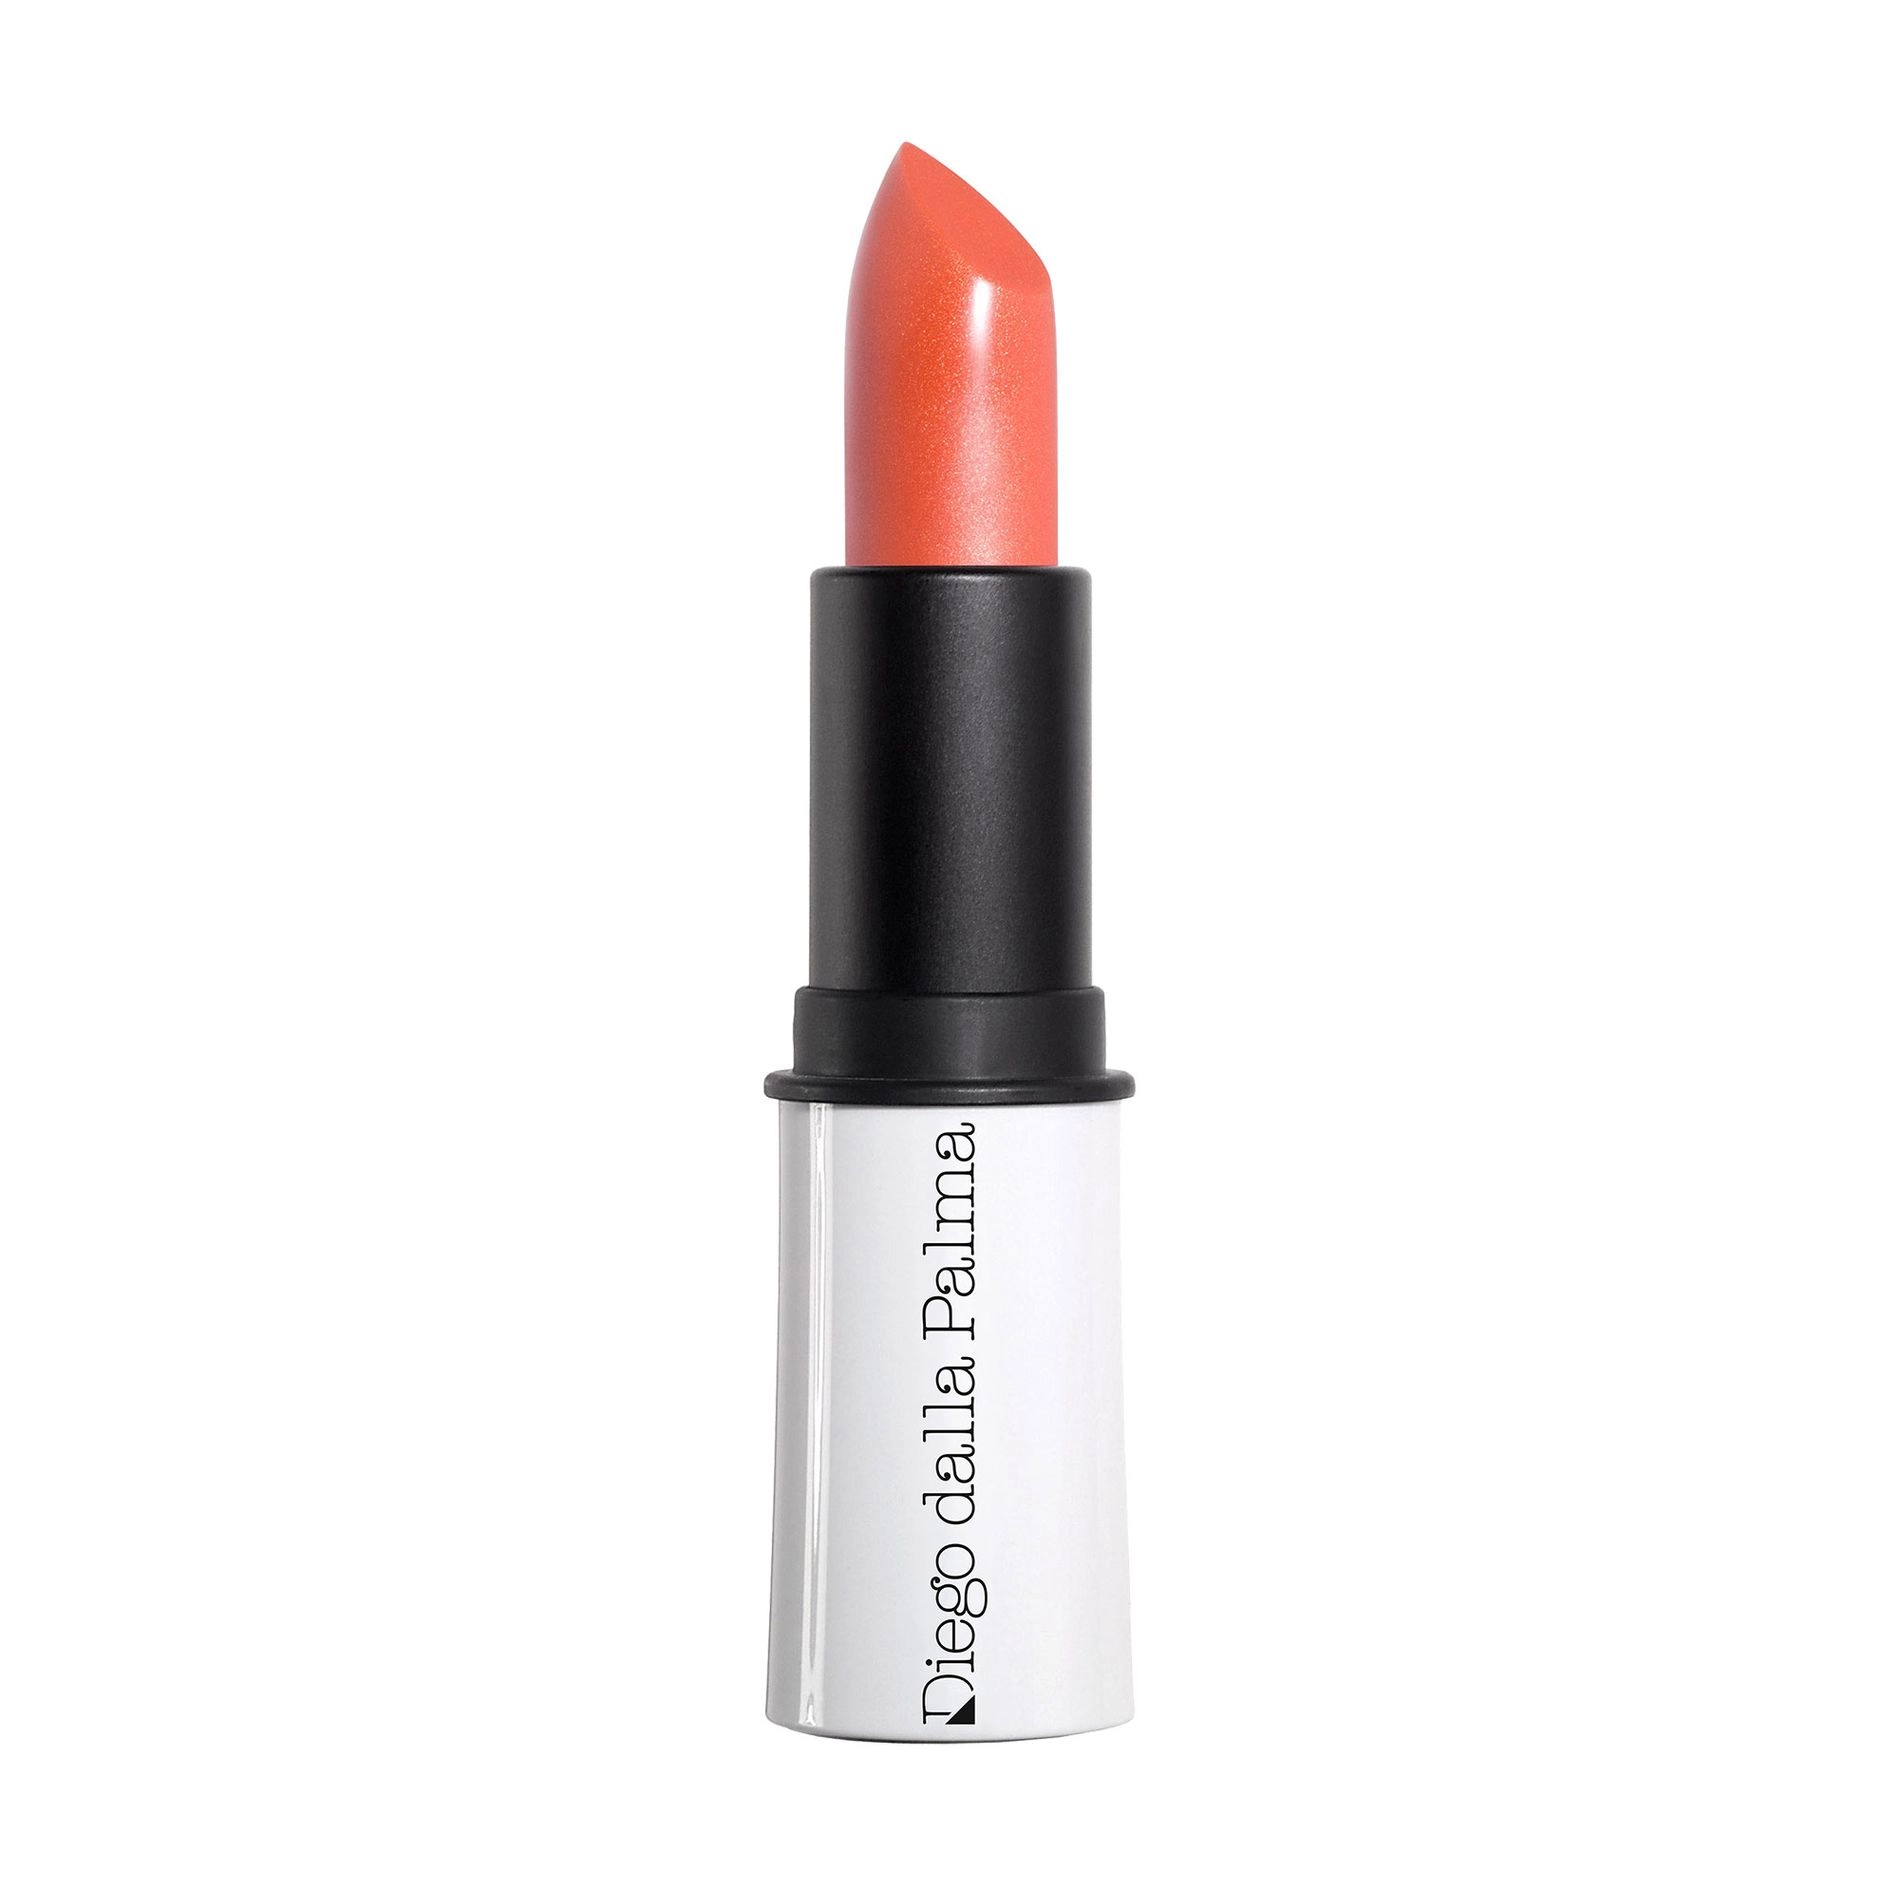 Diego Dalla Palma Помада для губ The Lipstick, 39 Frost Orange, 3.5 мл - фото N1